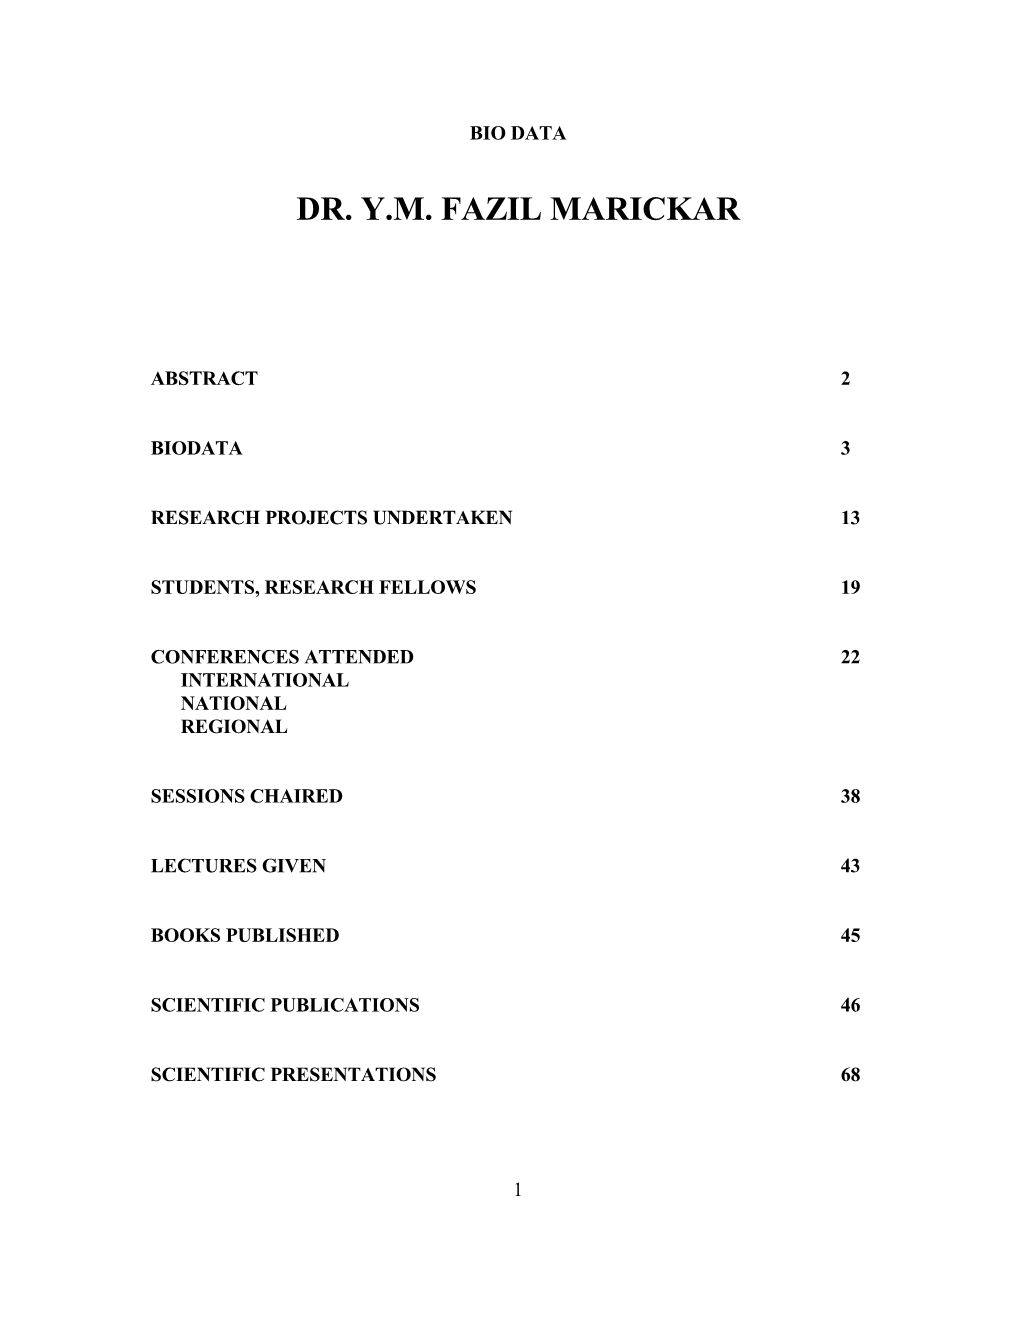 Dr. Y.M. Fazil Marickar